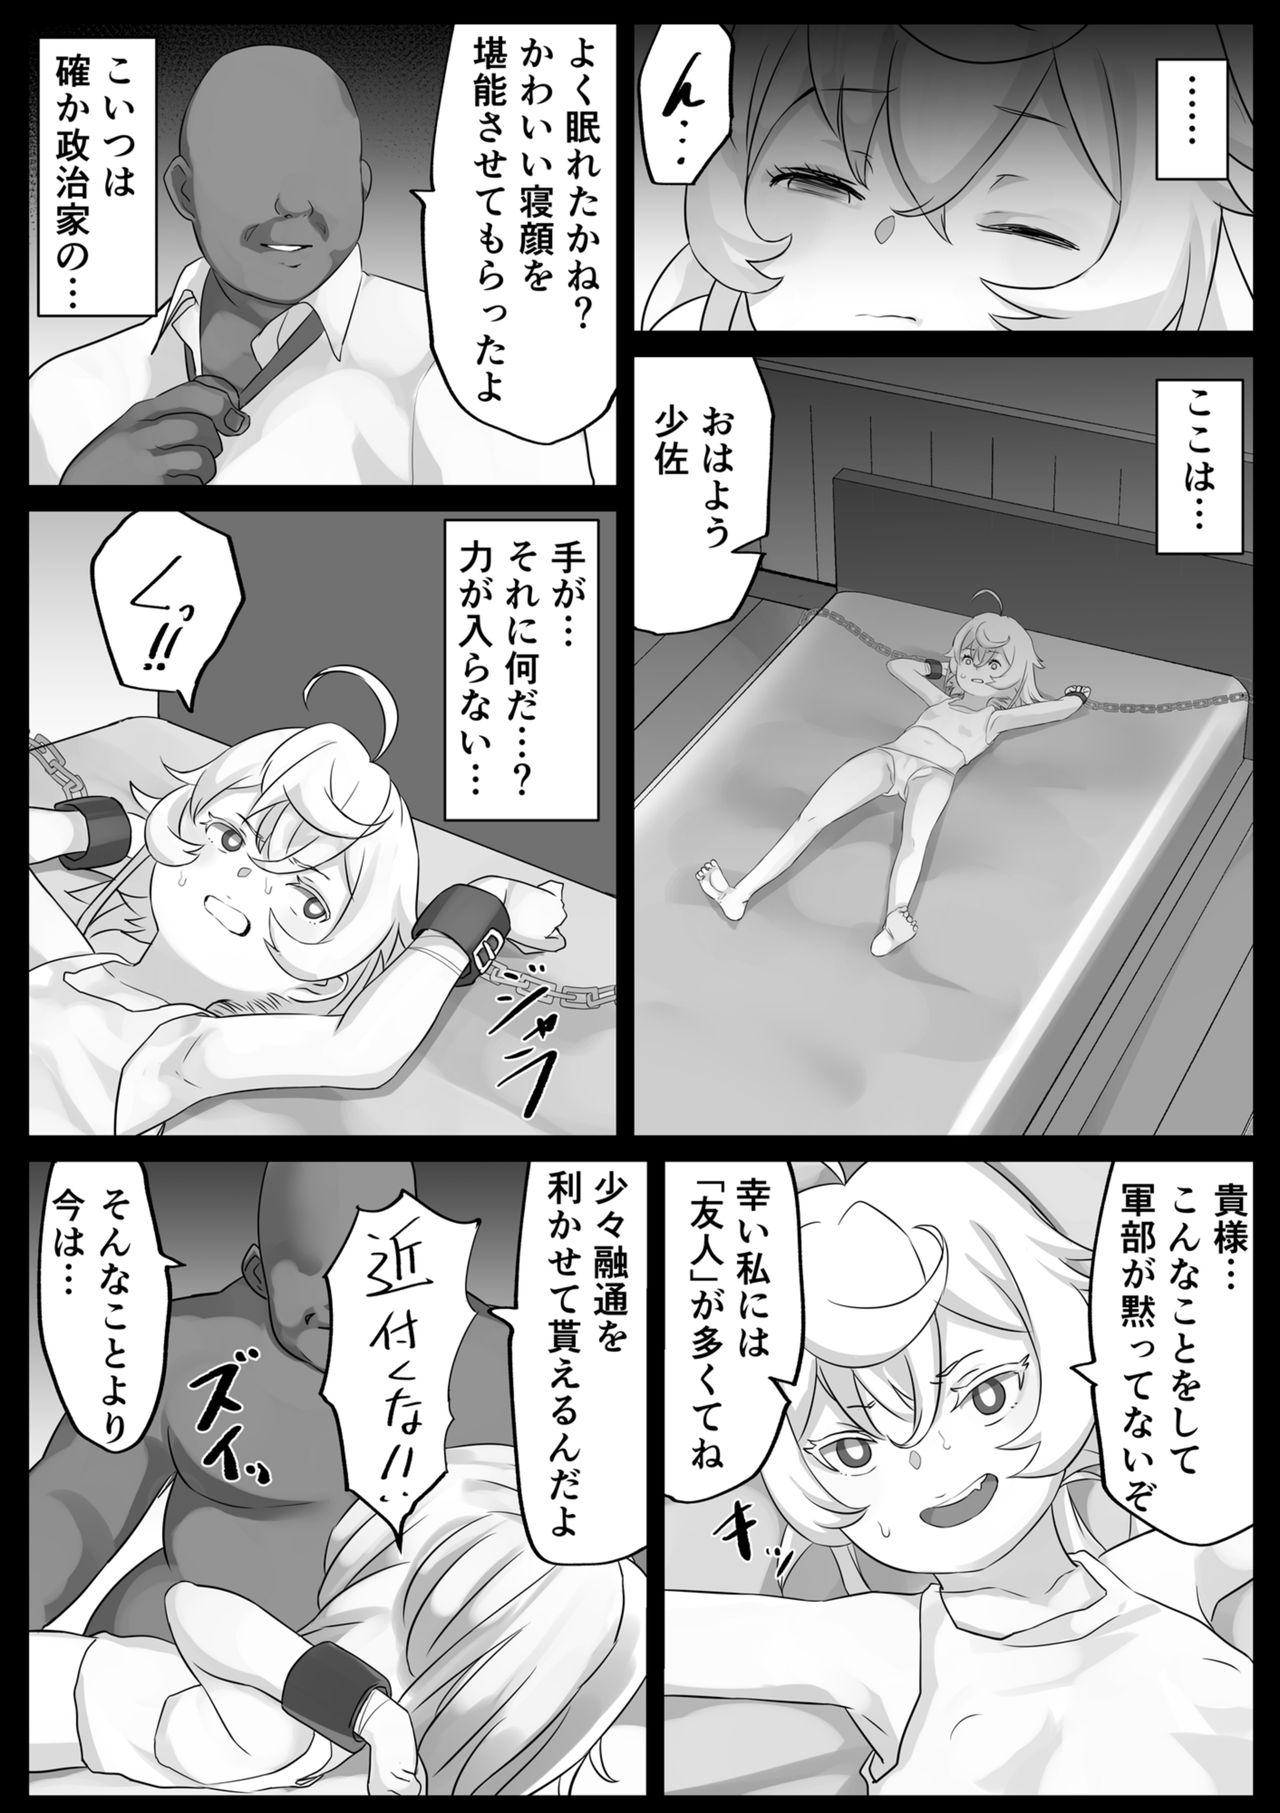 Friend Ojisan vs Ojisan - Youjo senki Short - Page 2